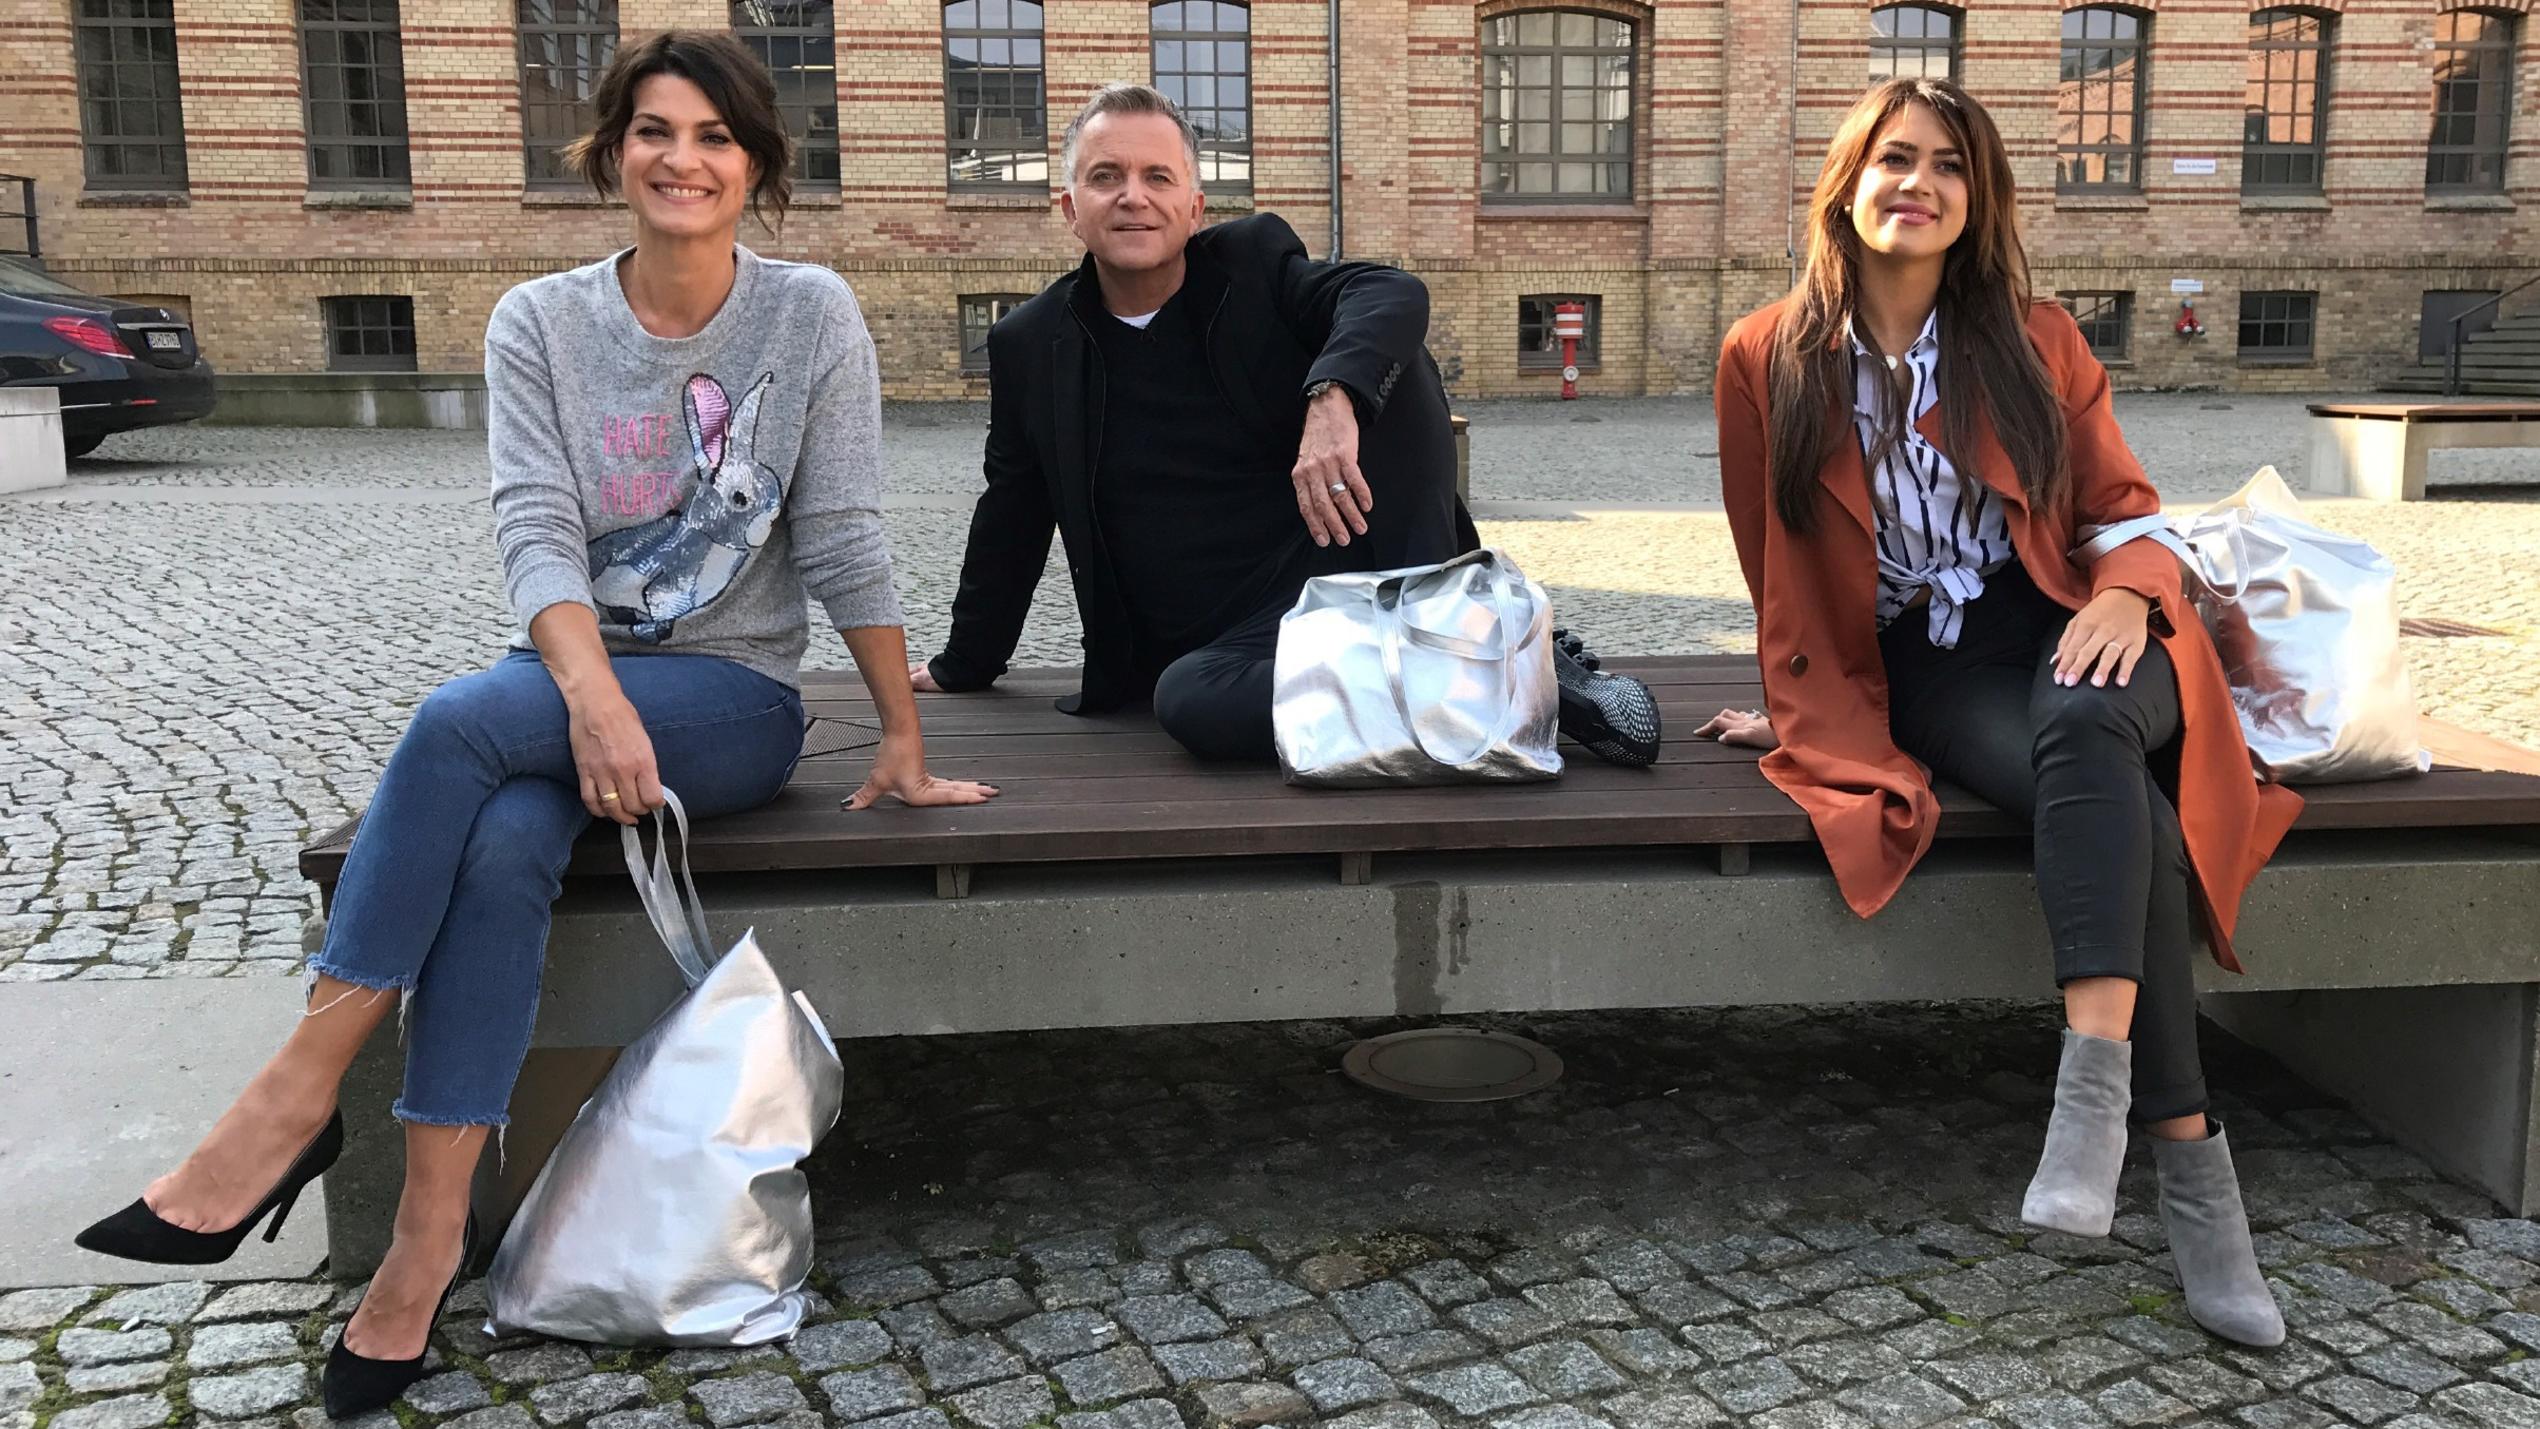 Promi Shopping Queen: Marlene Lufen, Jörg Knörr und Jessica Paszka kämpfen um die erste Promi-Mode-Krone des Jahres 